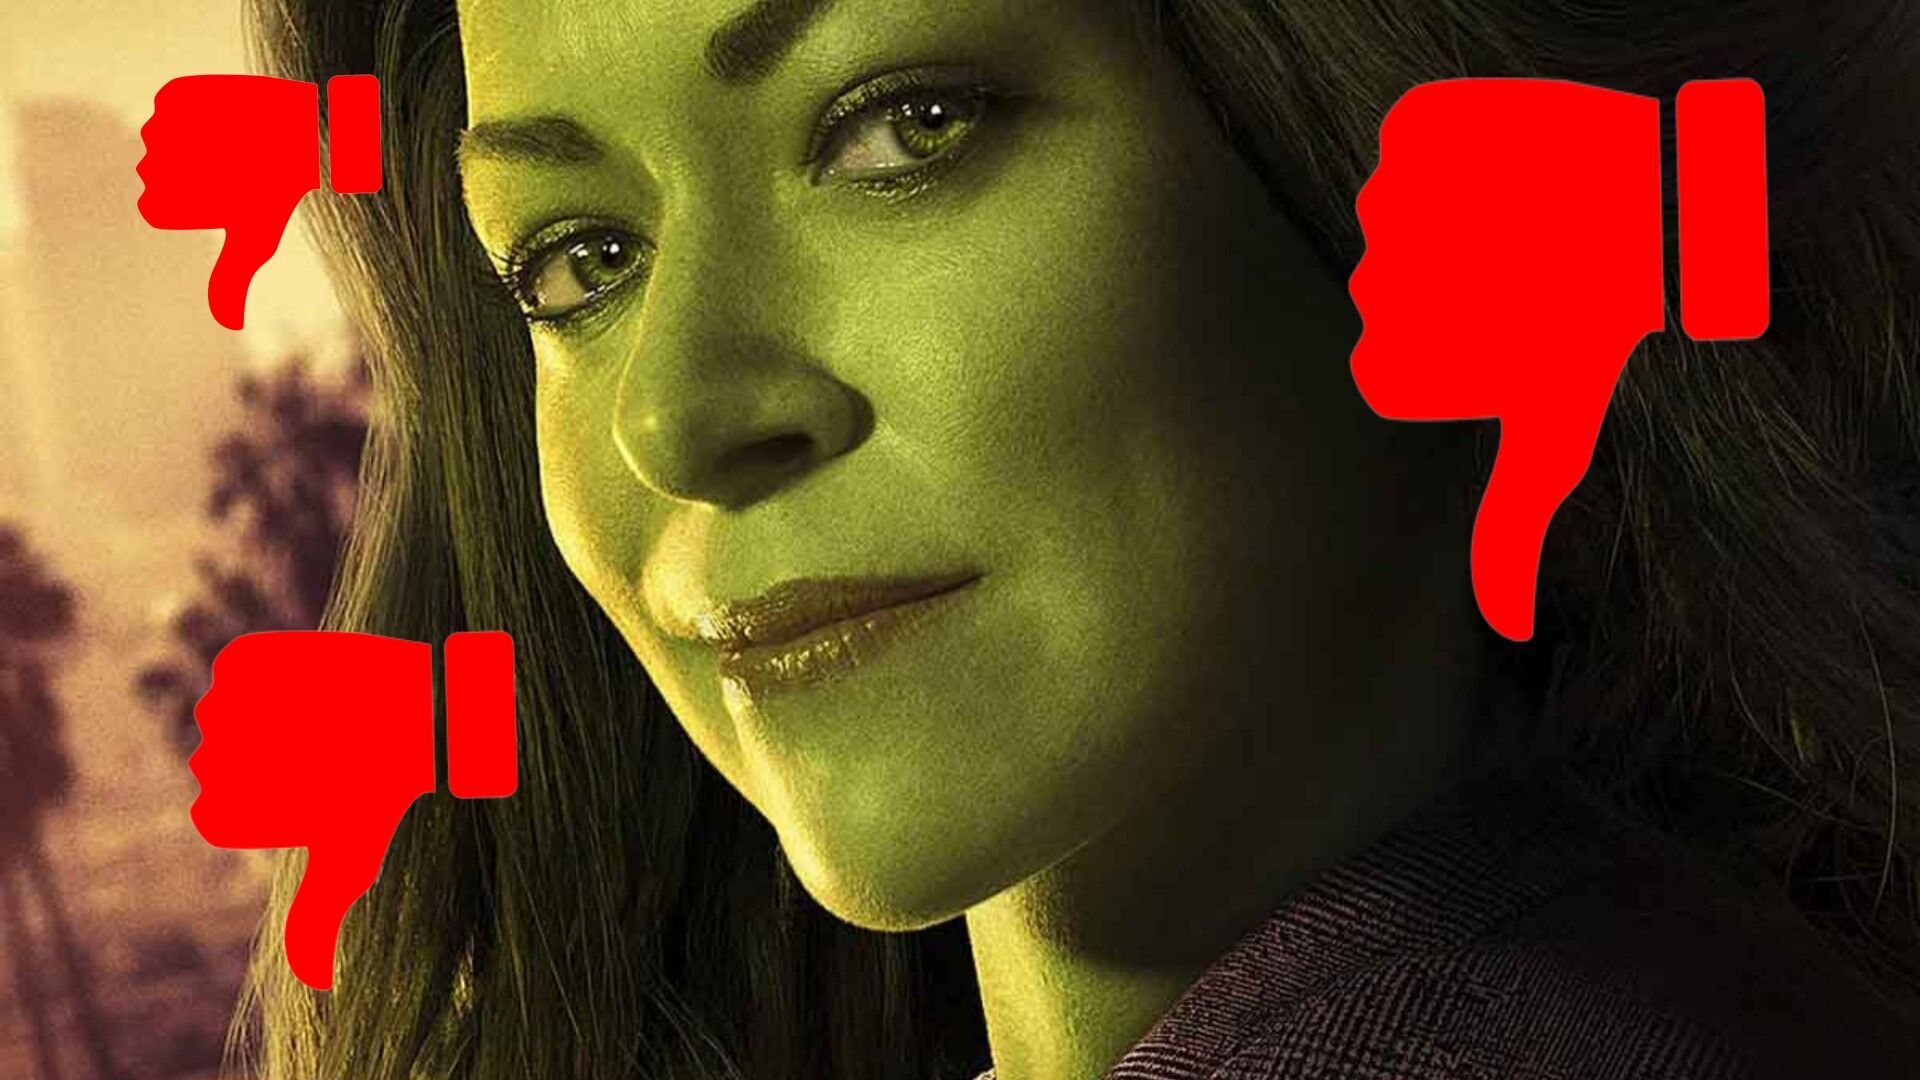 Mulher-Hulk sofre bombardeio de críticas no IMDb às vésperas da estreia